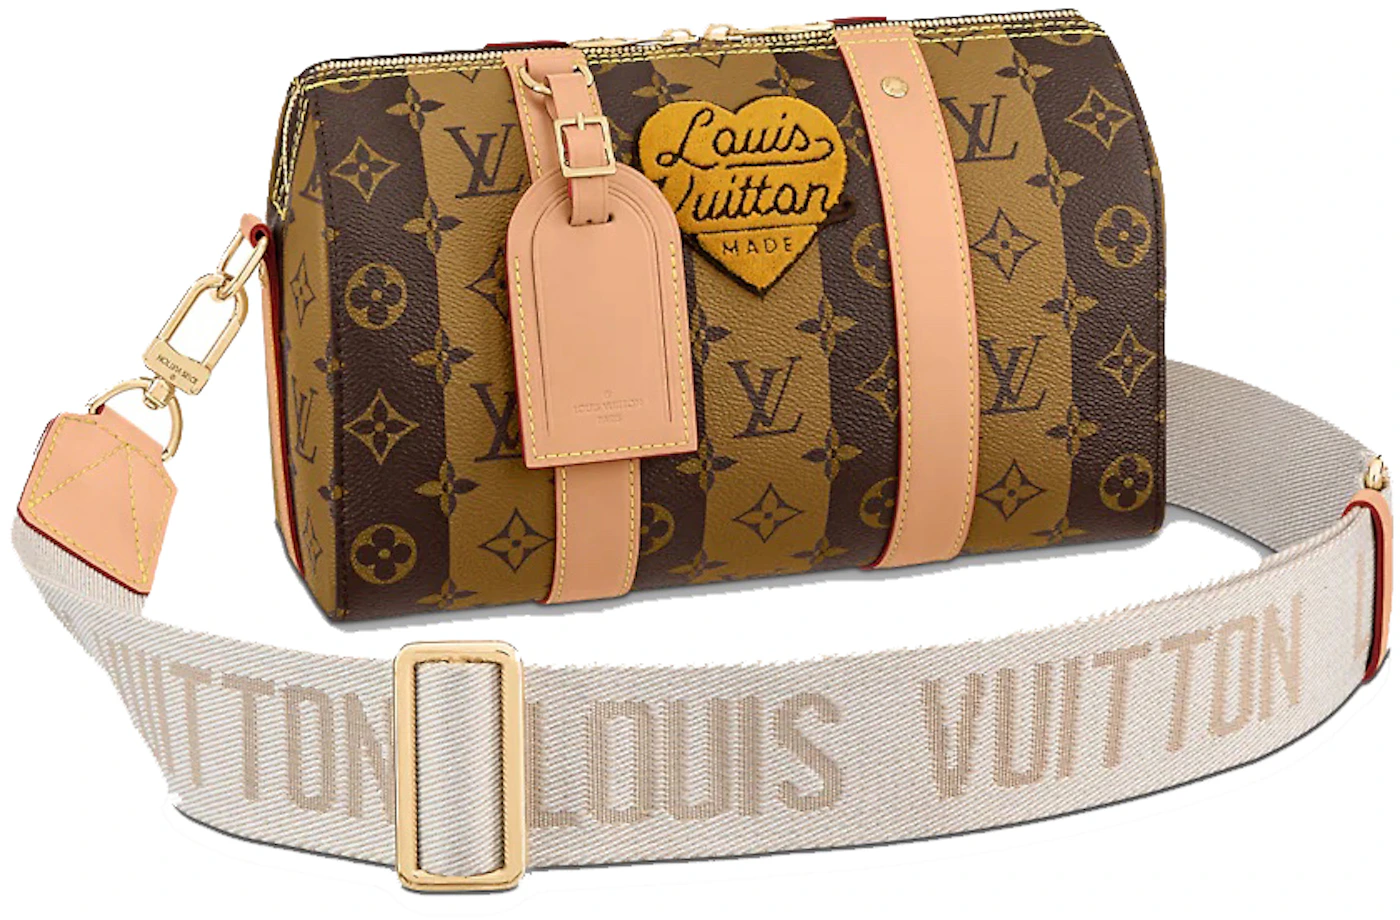 Louis Vuitton City Keepall